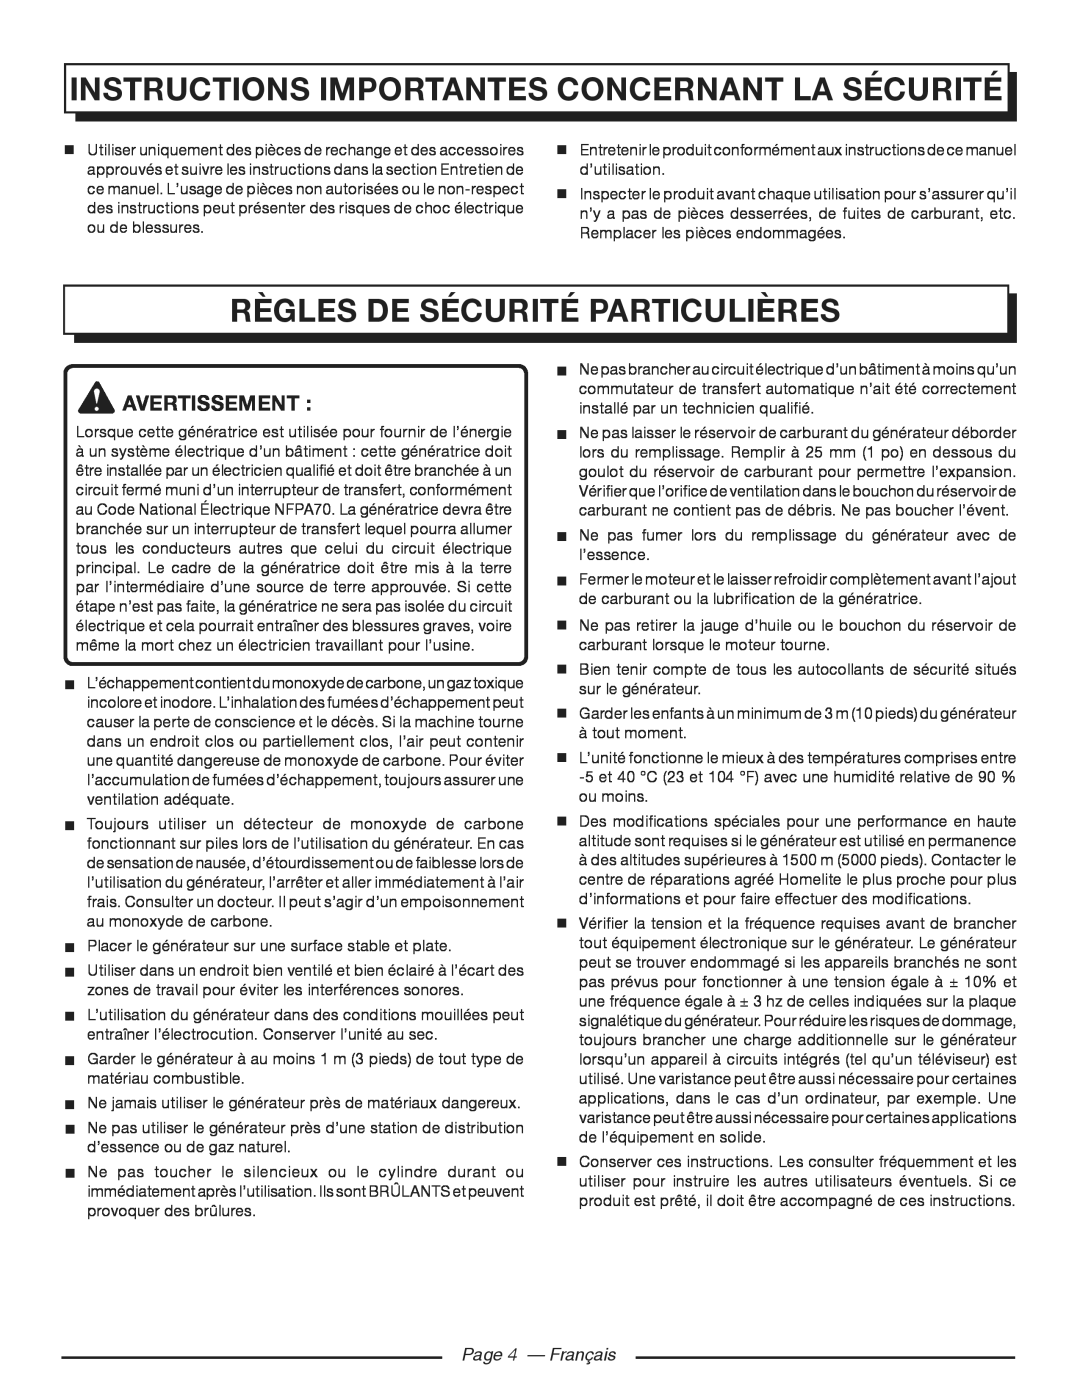 Homelite HGCA3000 Règles de sécurité particulières, Page 4 - Français, Instructions Importantes Concernant La Sécurité 